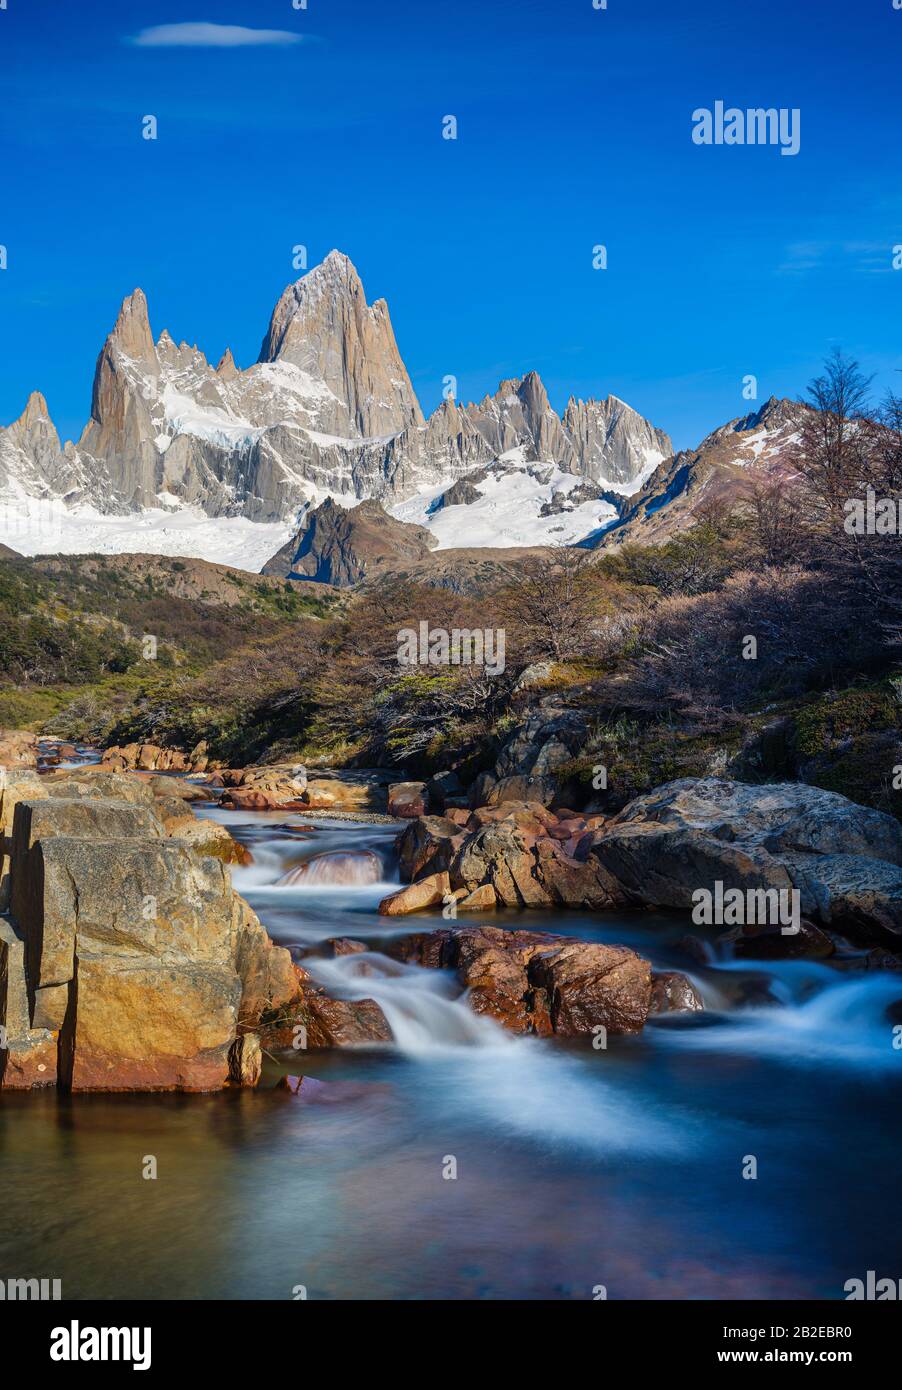 Nationalpark LOS GLACIARES, ARGENTINIEN - CIRCA FEBRUAR 2019: Wasserfall und Mount Fitz Roy im Nationalpark los Glaciares in Argentinien. Stockfoto